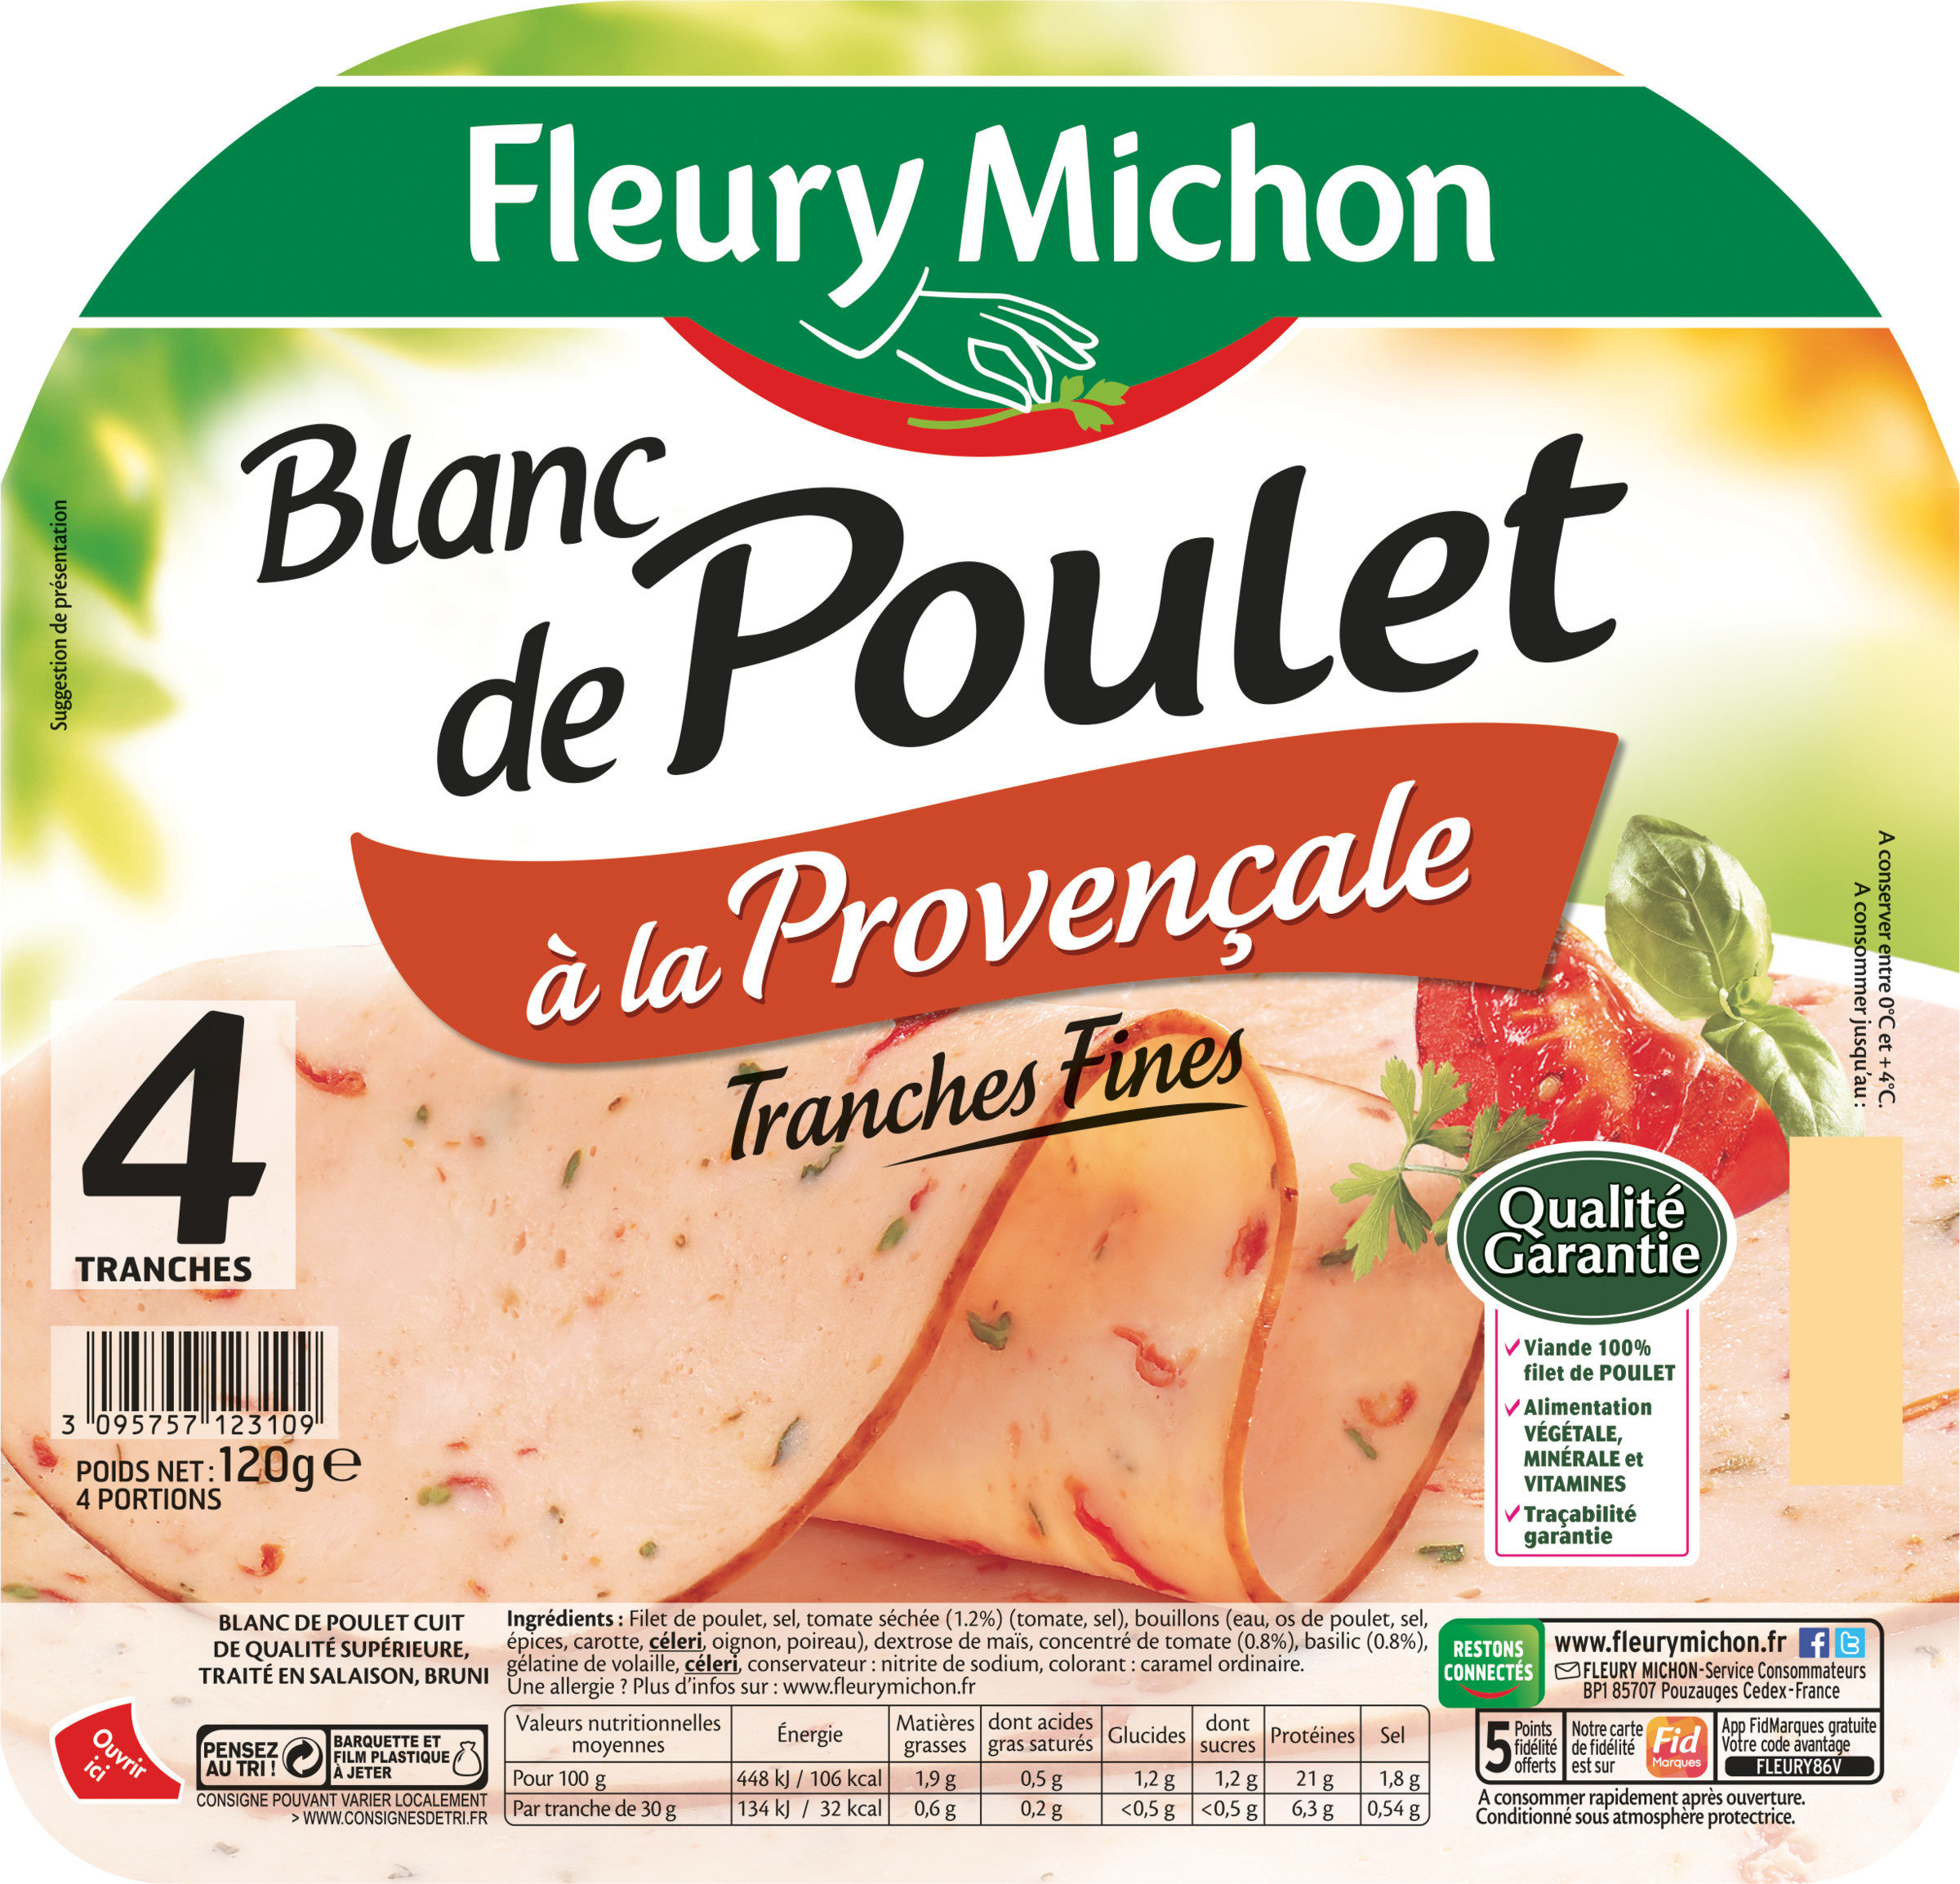 Blanc de Poulet à la Provençale - 4 tranches fines - Product - fr